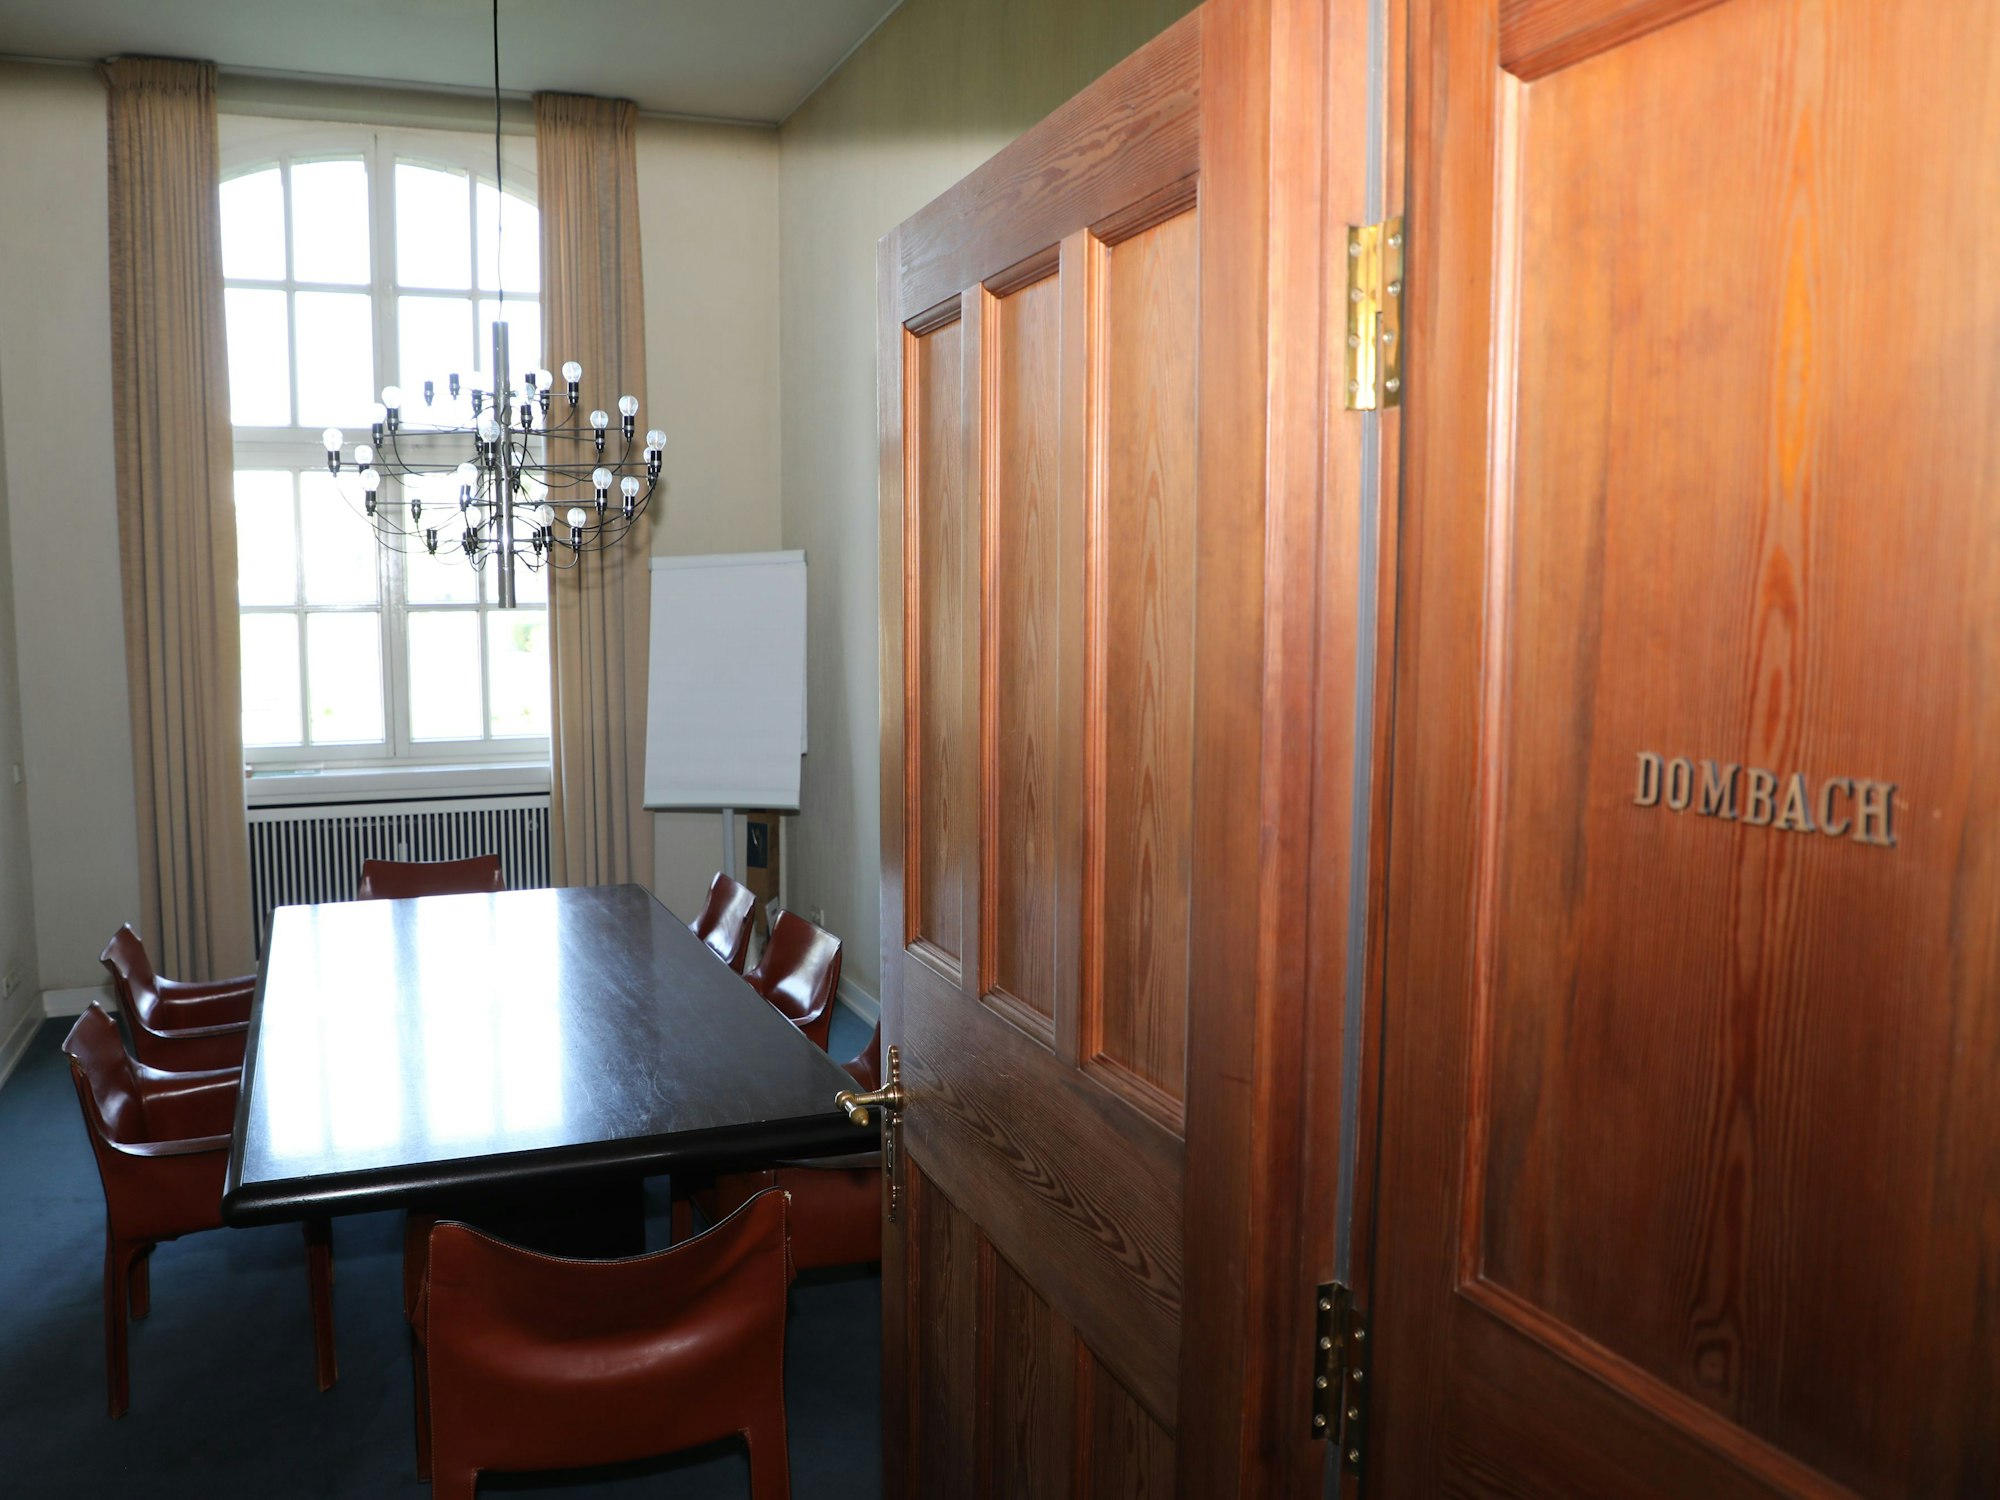 Durch eine offene Tür schaut man in einen Raum mit Besprechungstisch. An der Tür steht „Dombach“ in Messinglettern.